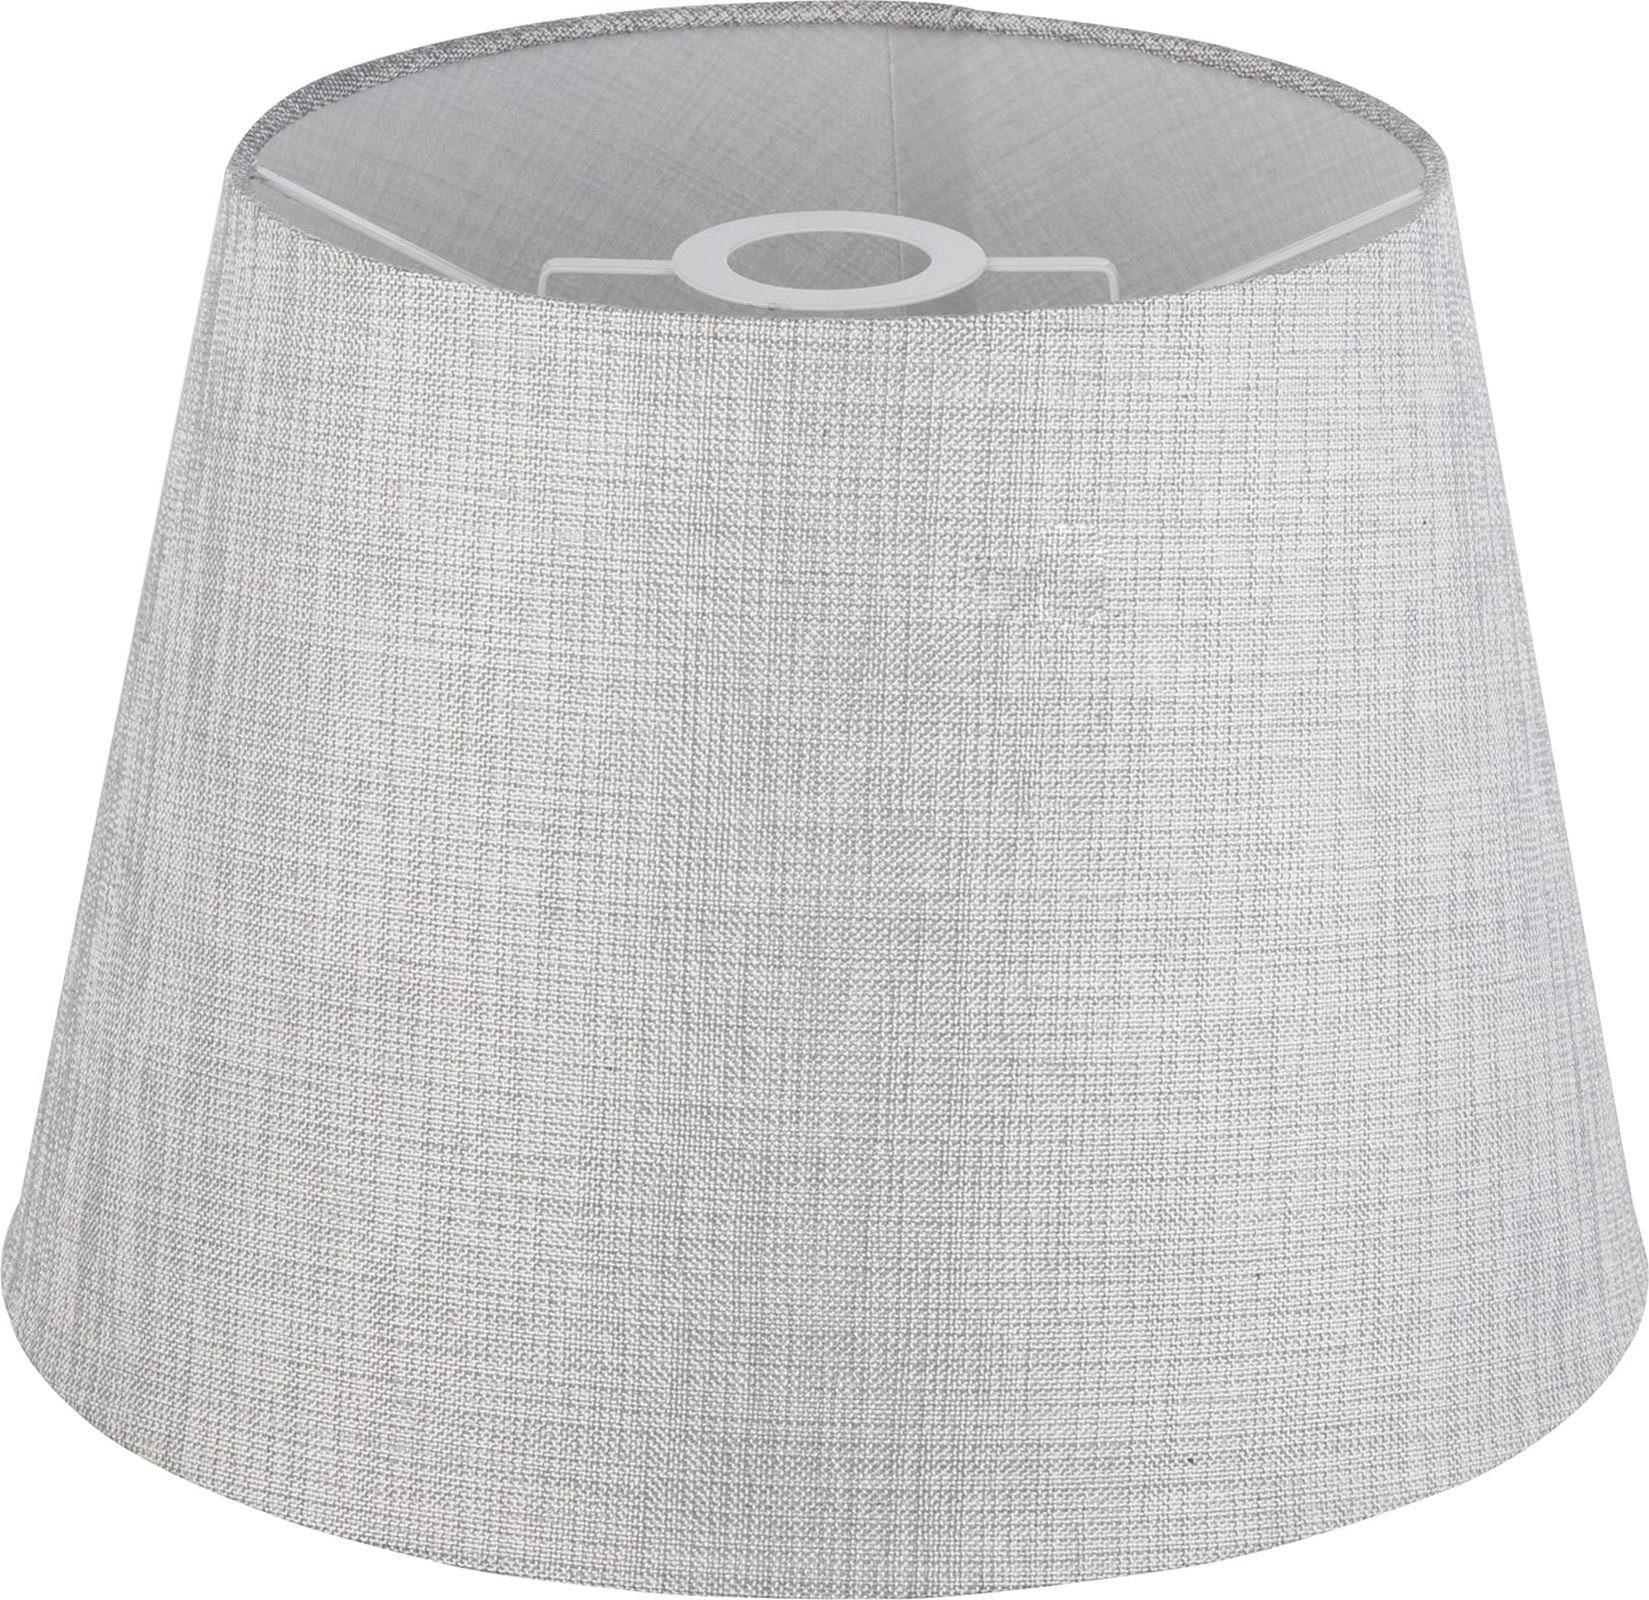 Globo Tischleuchte Лампиschirm für Tischleuchten Grau Textilschirm Tischlampen 35 cm